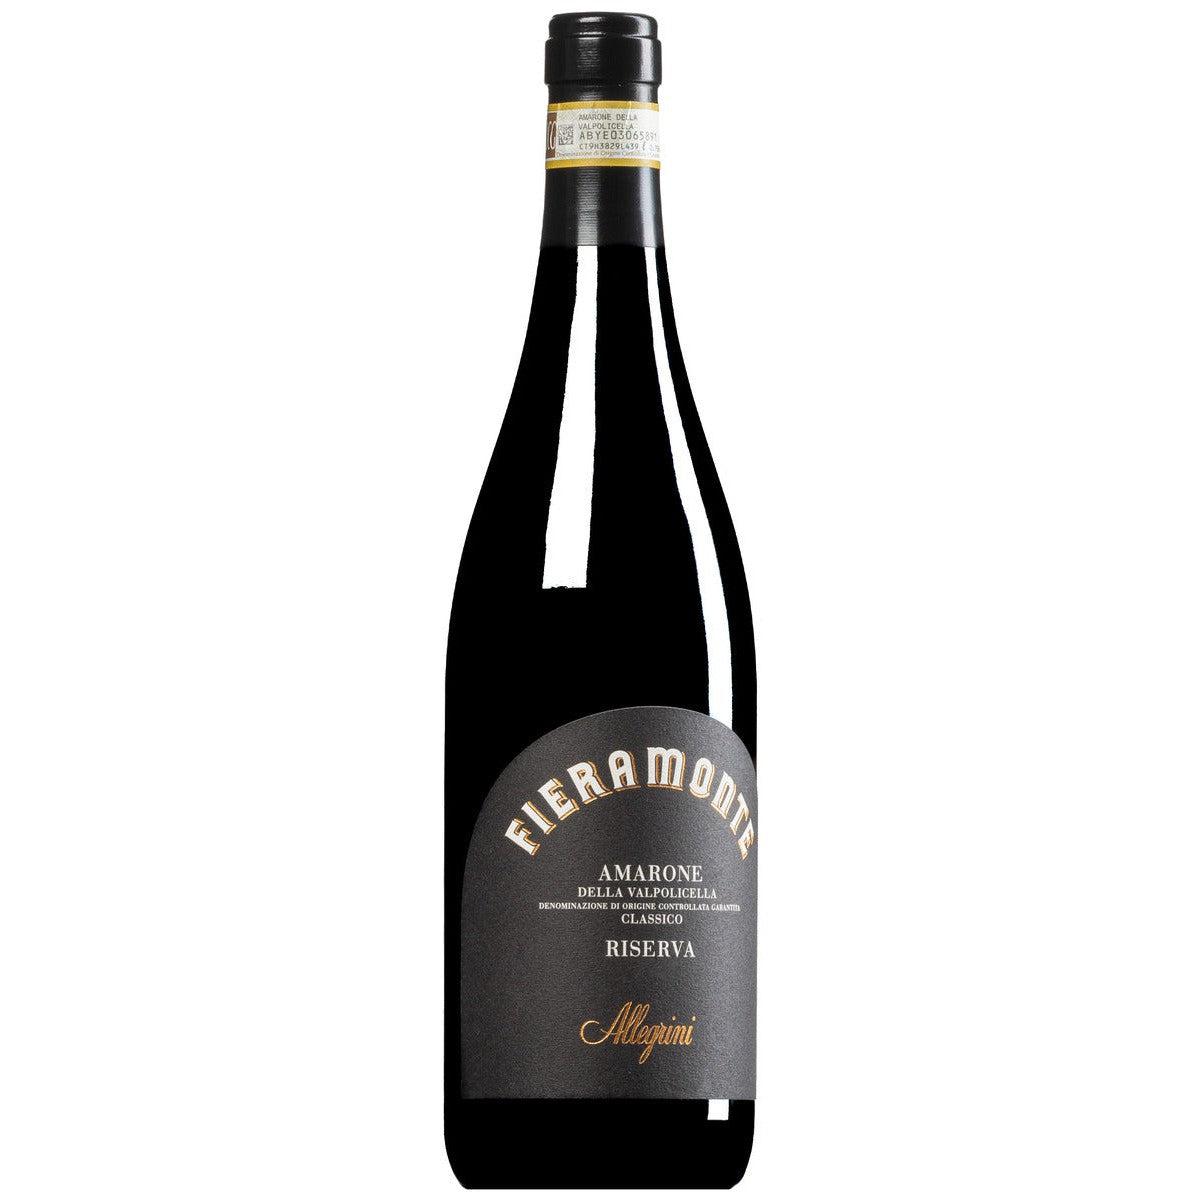 Agricola Allegrini Fieramonte Amarone Classico Riserva DOCG 2015-Red Wine-World Wine